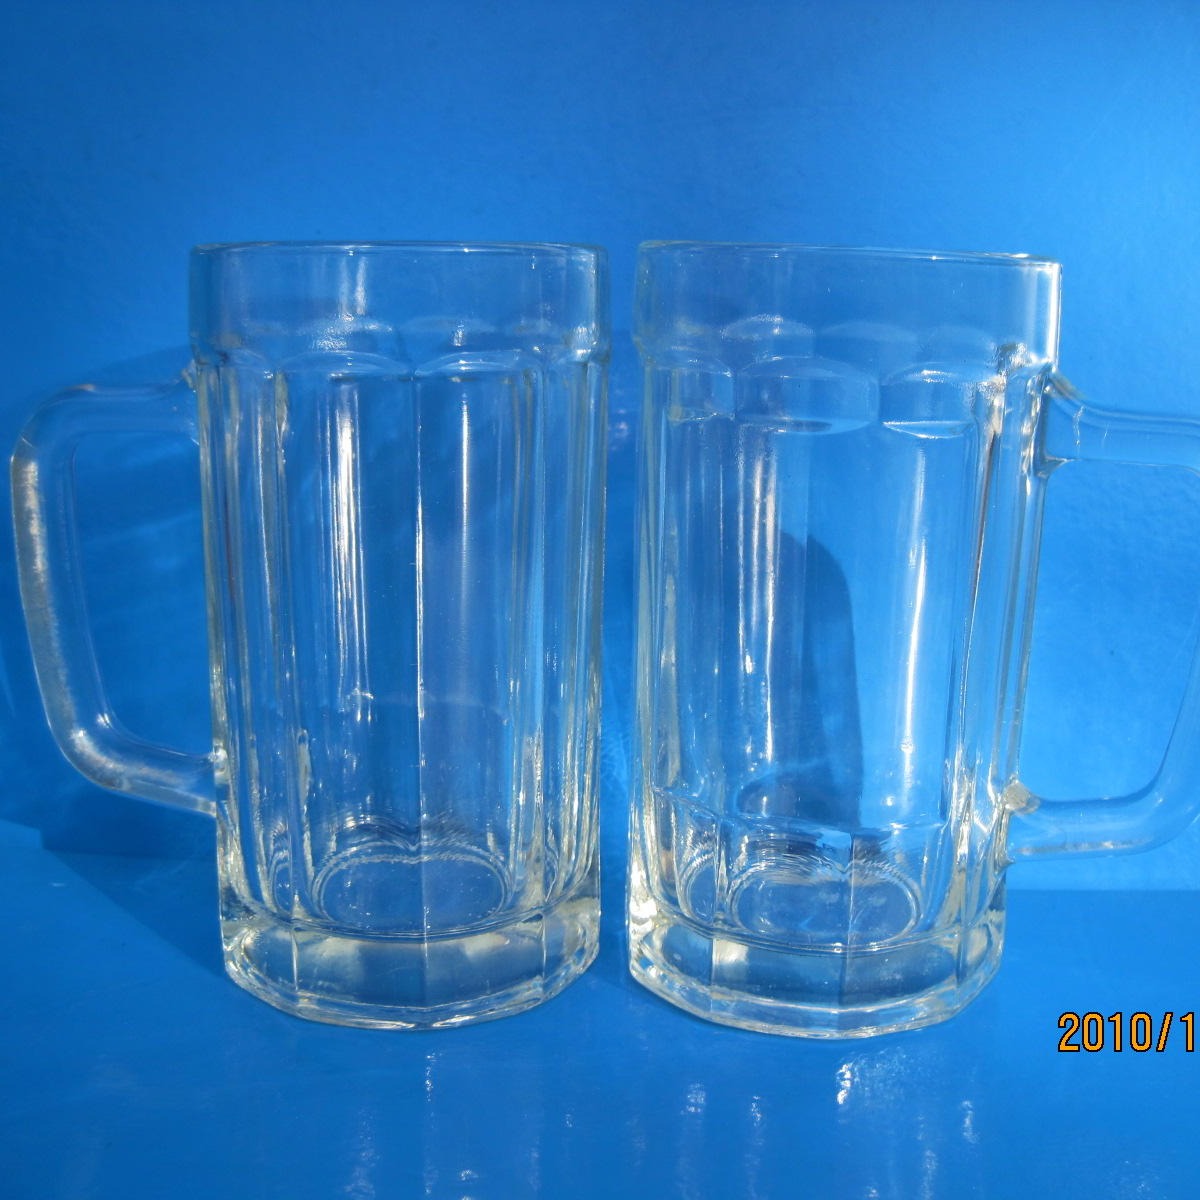 玻璃啤酒杯，隆安玻璃杯，玻璃饮料杯，玻璃水杯，玻璃广告杯，礼品杯玻璃制品生产厂家批发定制各种玻璃瓶玻璃包装蜡台杯，